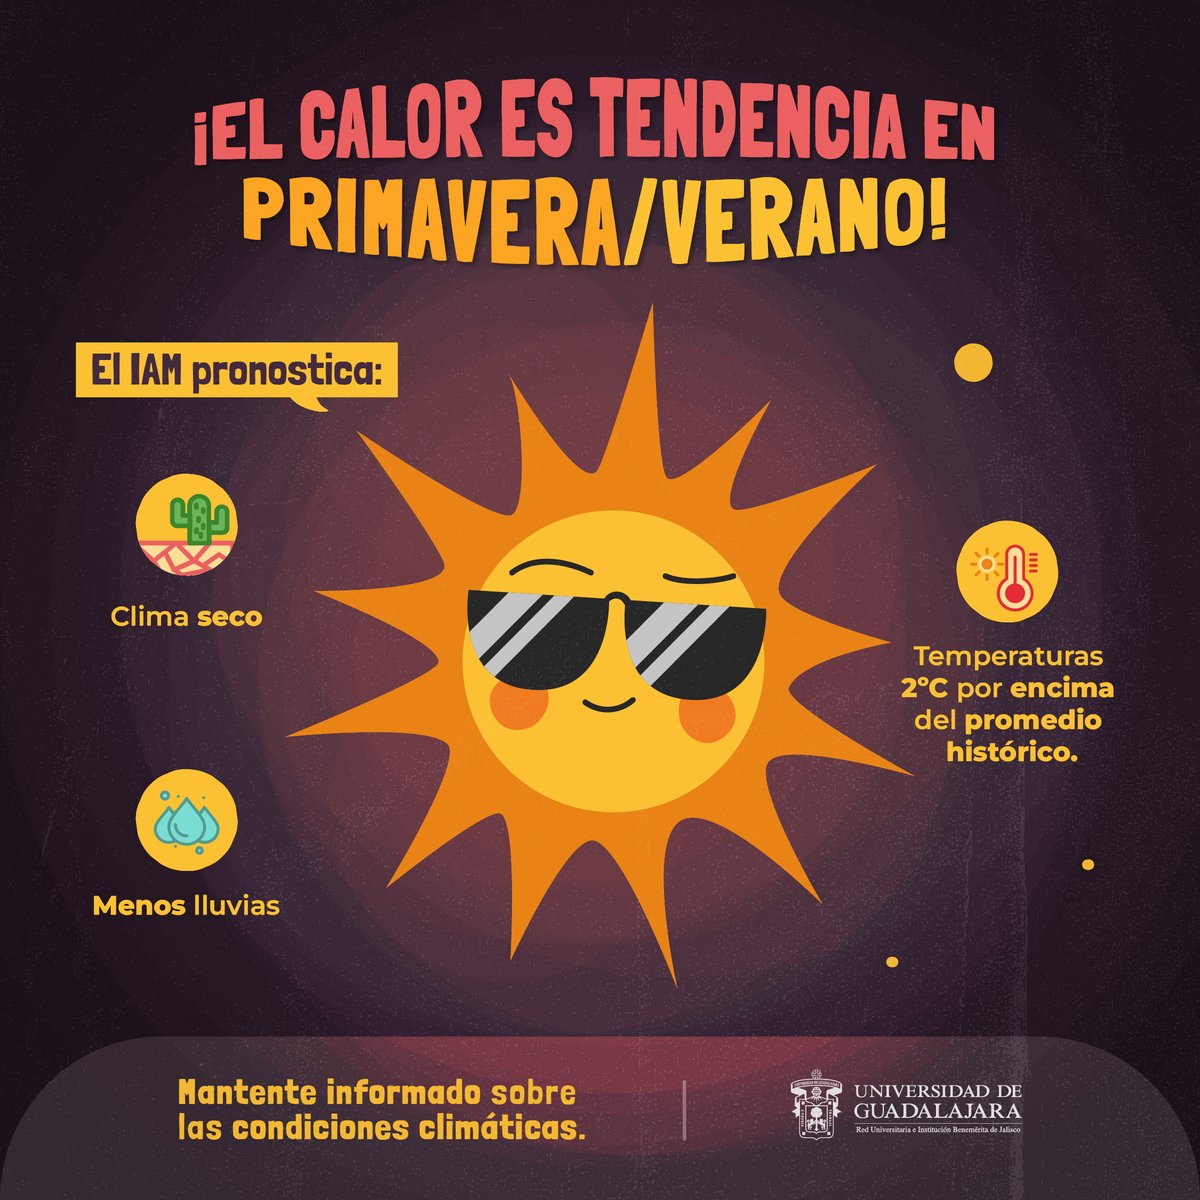 ¡Ten a la mano el protector solar! ☀️  

Especialistas de @IAM_UdeG estiman altas temperaturas durante mayo 🌡️, además de un clima más seco de lo normal.  

Conoce todos los detalles en el siguiente enlace: bit.ly/3xDIpax